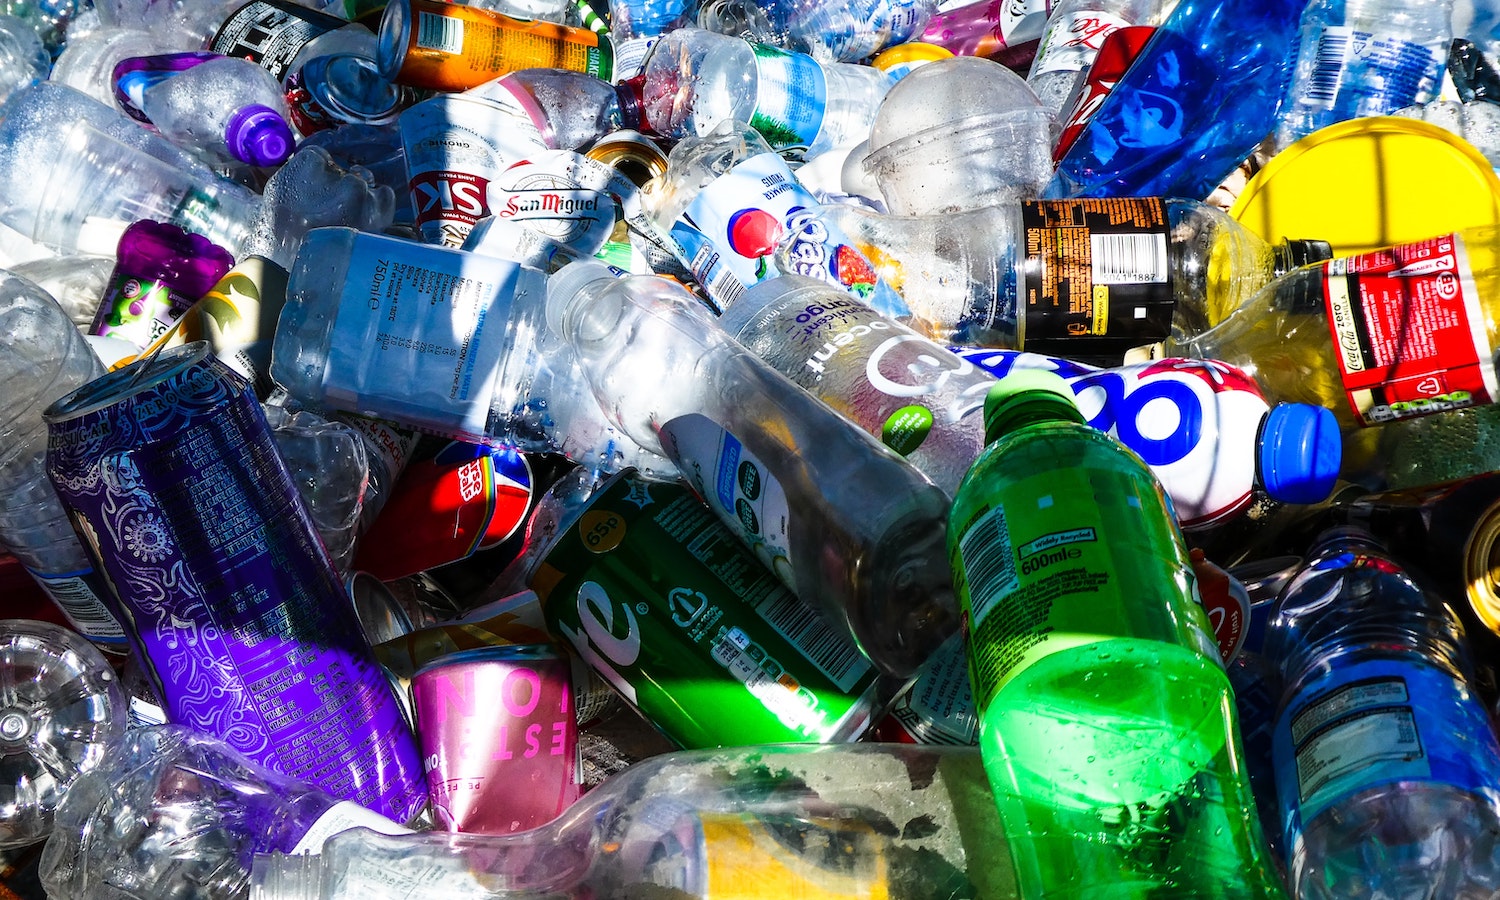 Reusable Water Bottles Reduce Waste, Bottle Manufacturer